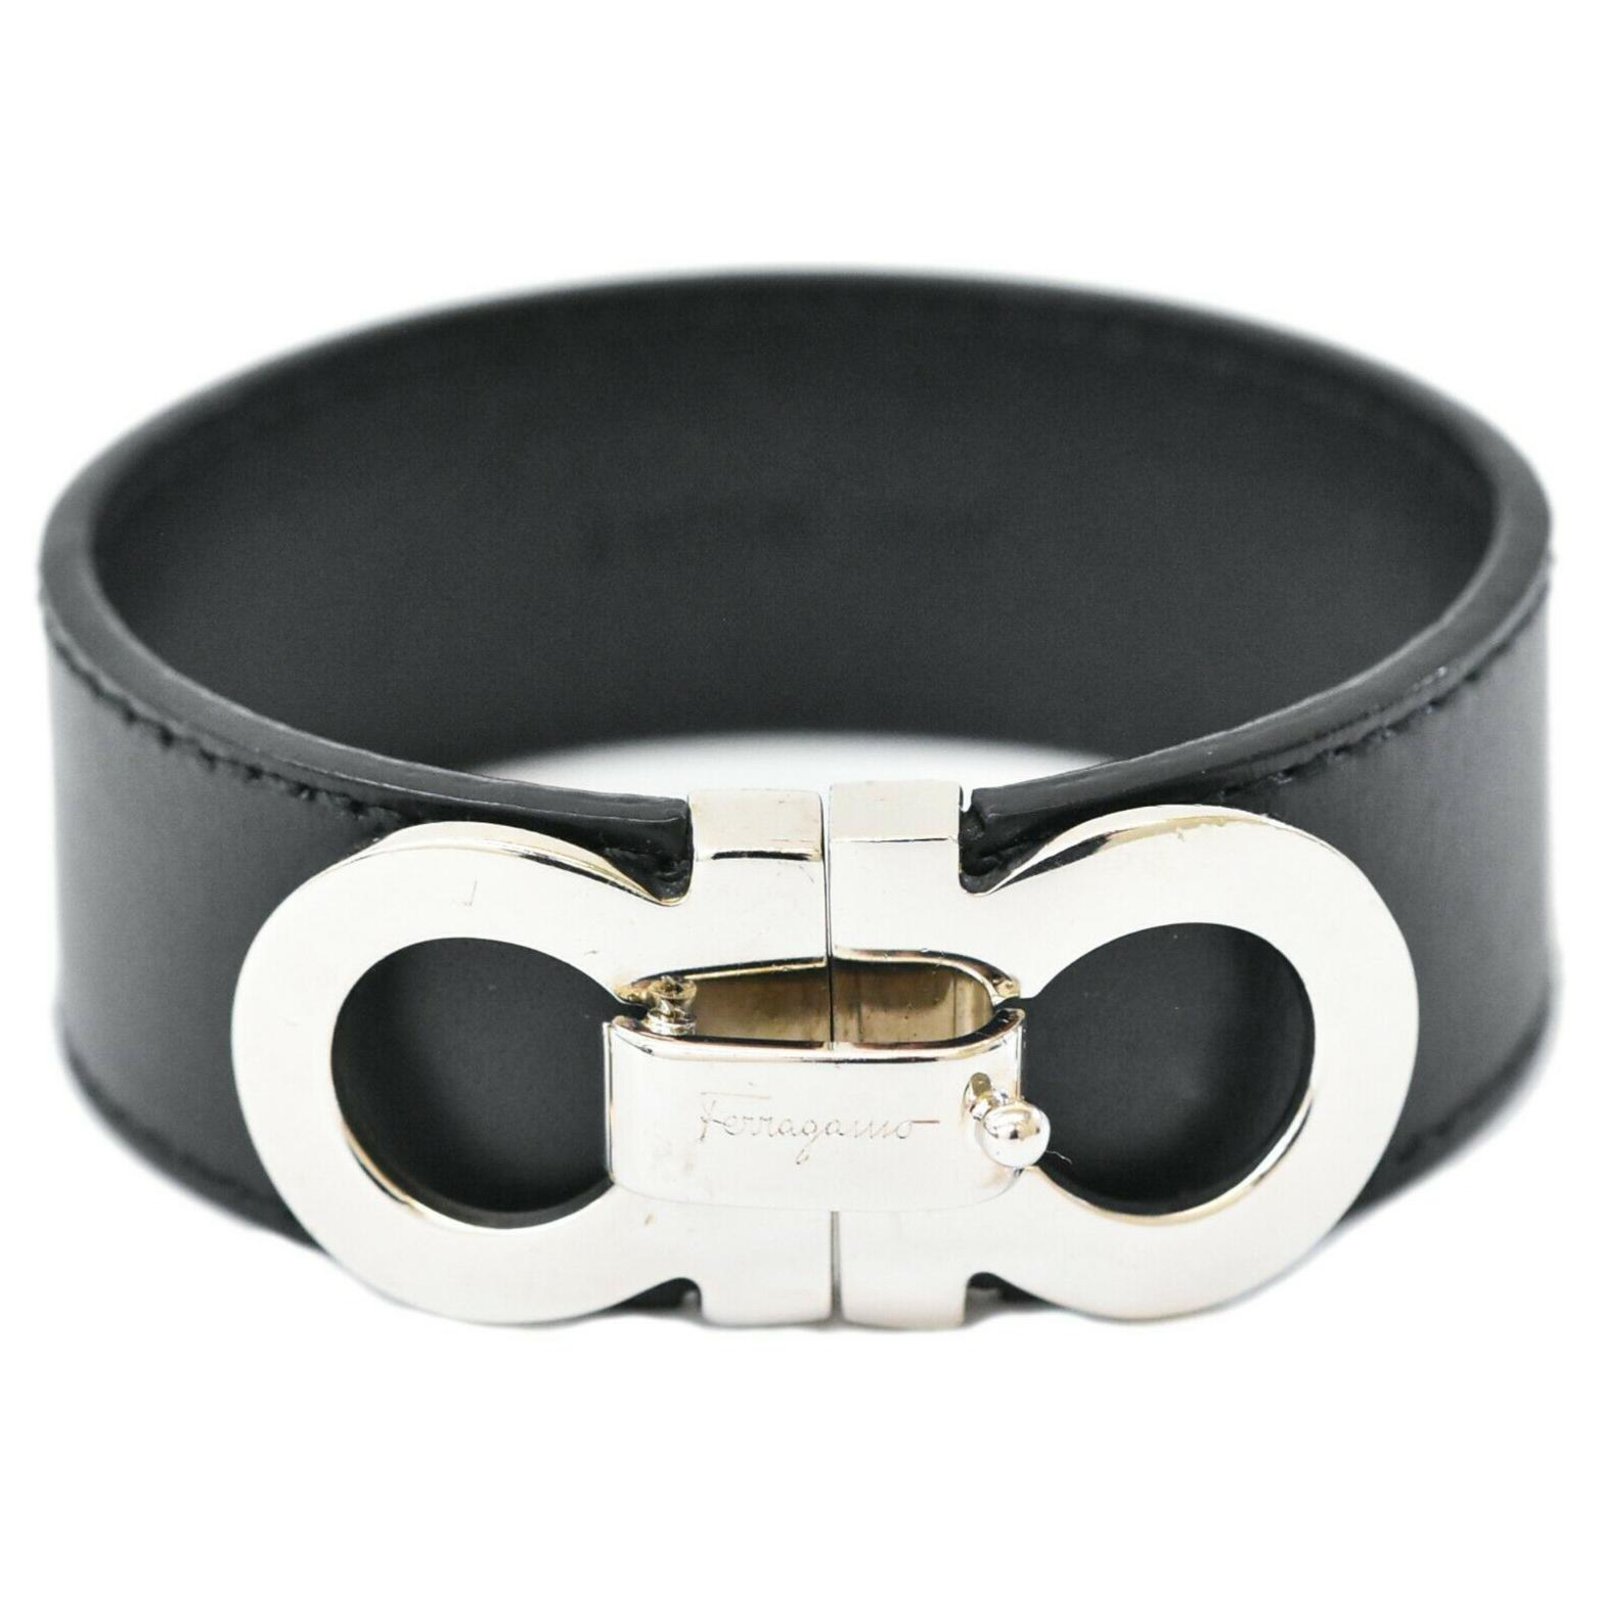 Authentic Salvatore Ferragamo Men's Bracelet with Magnetic Enclosure